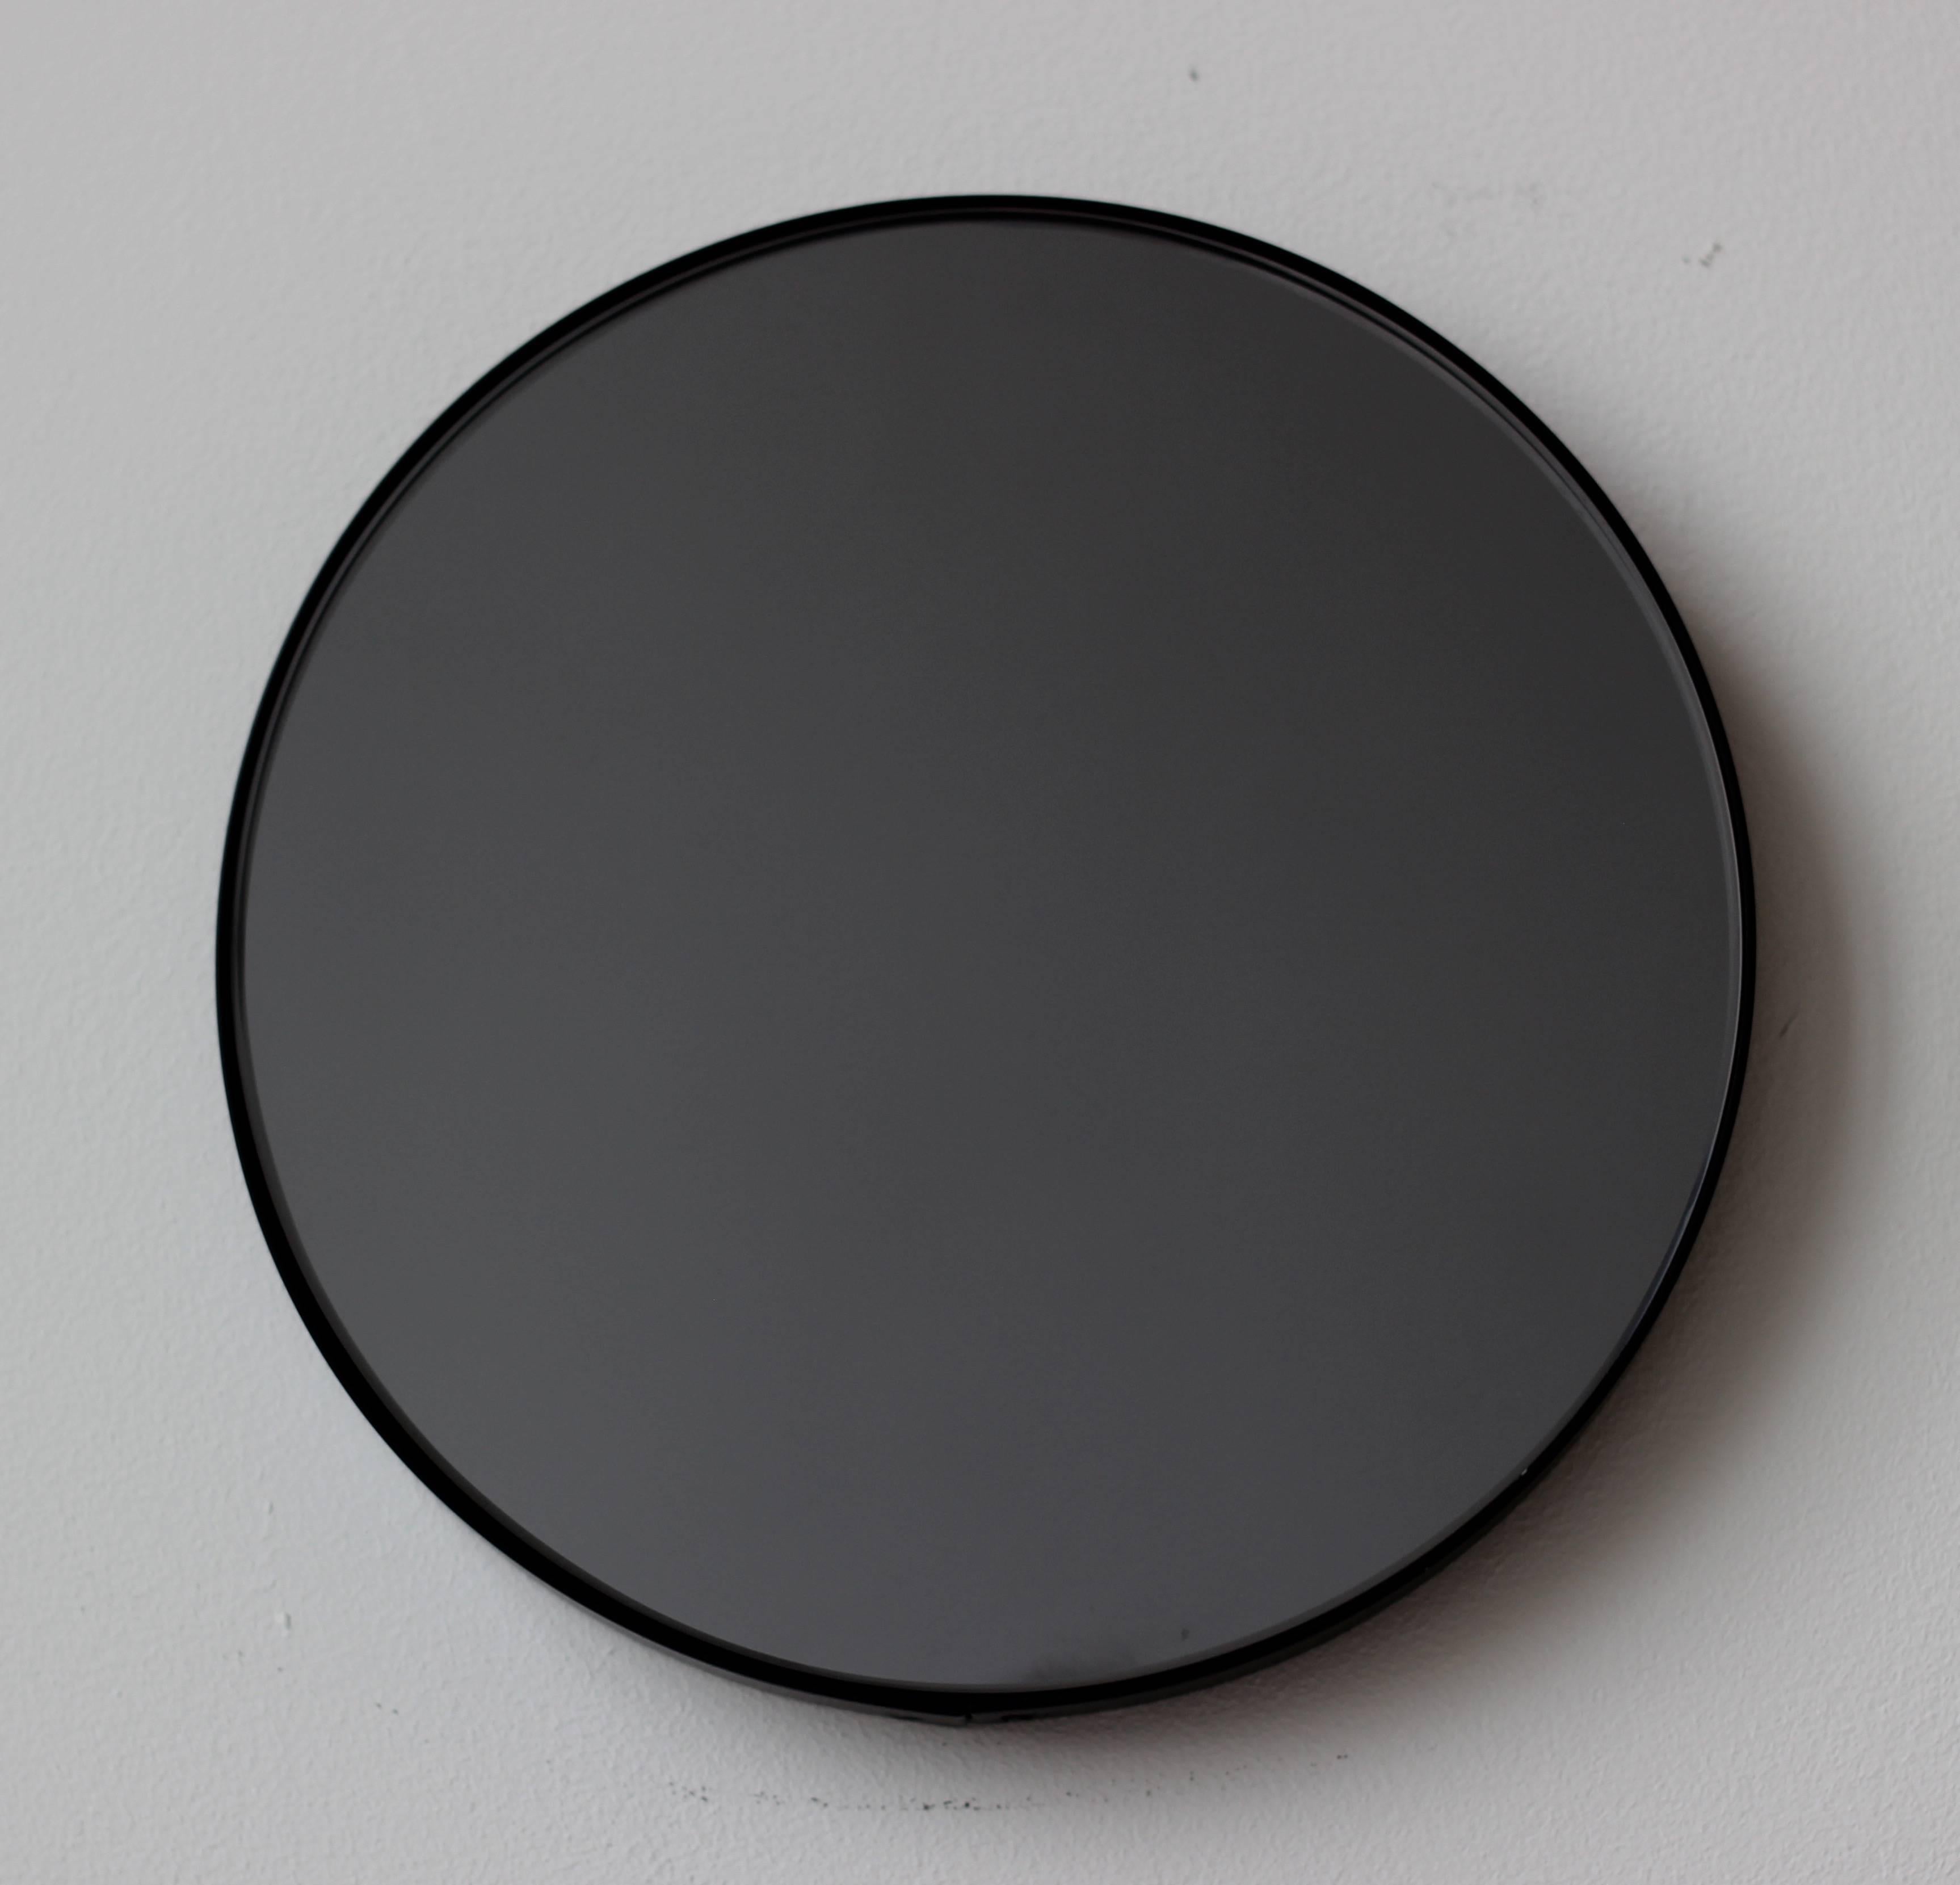 Zeitgenössischer Orbis™ runder, schwarz getönter Spiegel mit einem minimalistischen, schwarz pulverbeschichteten Aluminiumrahmen. Entworfen und handgefertigt in London, UK.

Die mittelgroßen, großen und extragroßen Spiegel (60, 80 und 100 cm) sind